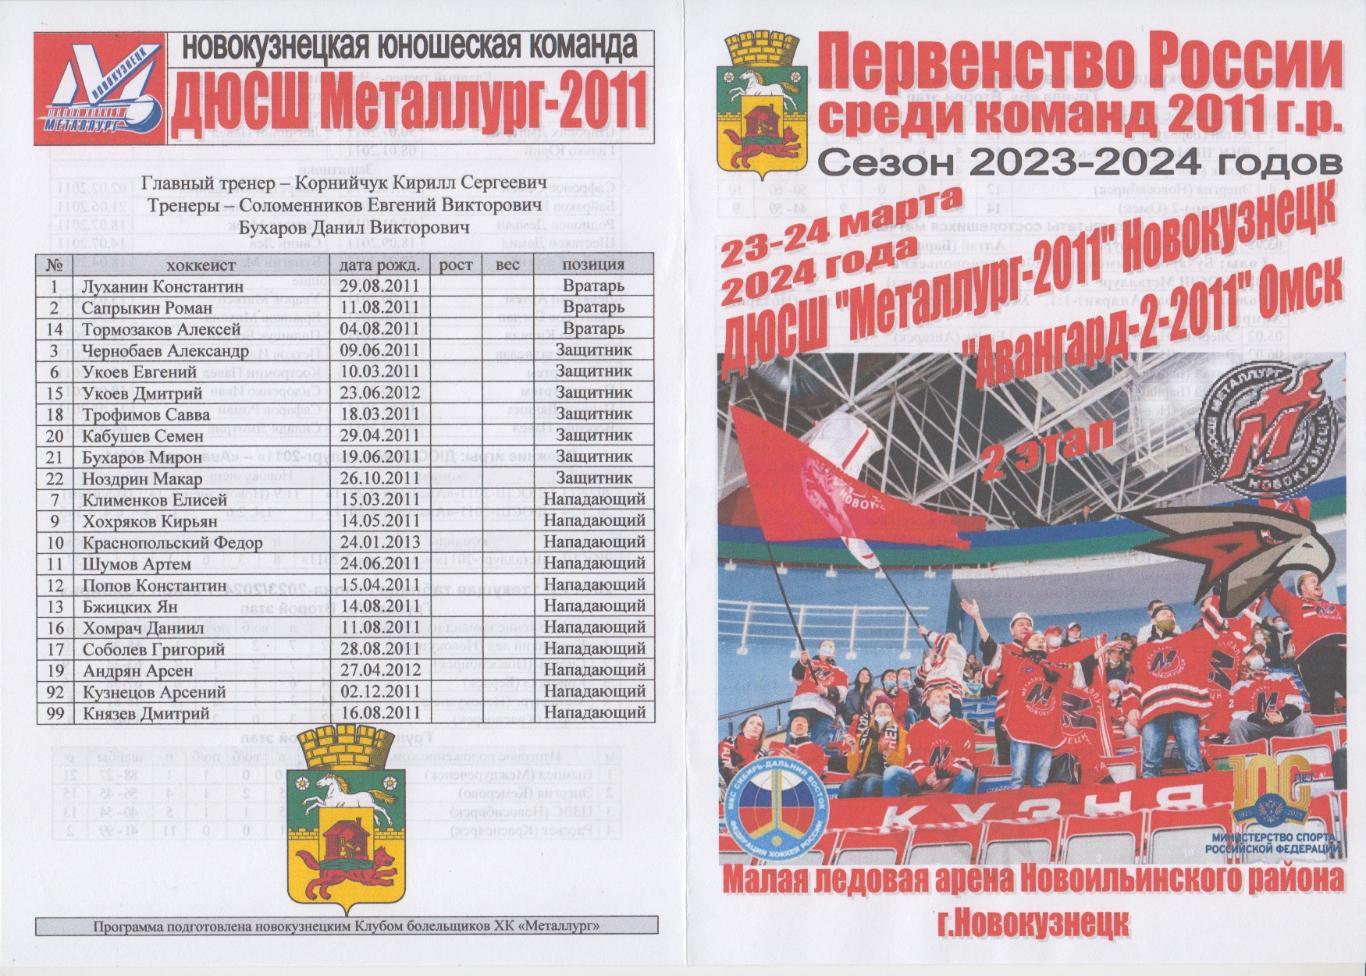 ДЮСШ Металлург-2011(Новокузнецк) - Авангард-2-2011(Омск) - 2023/24 - 2